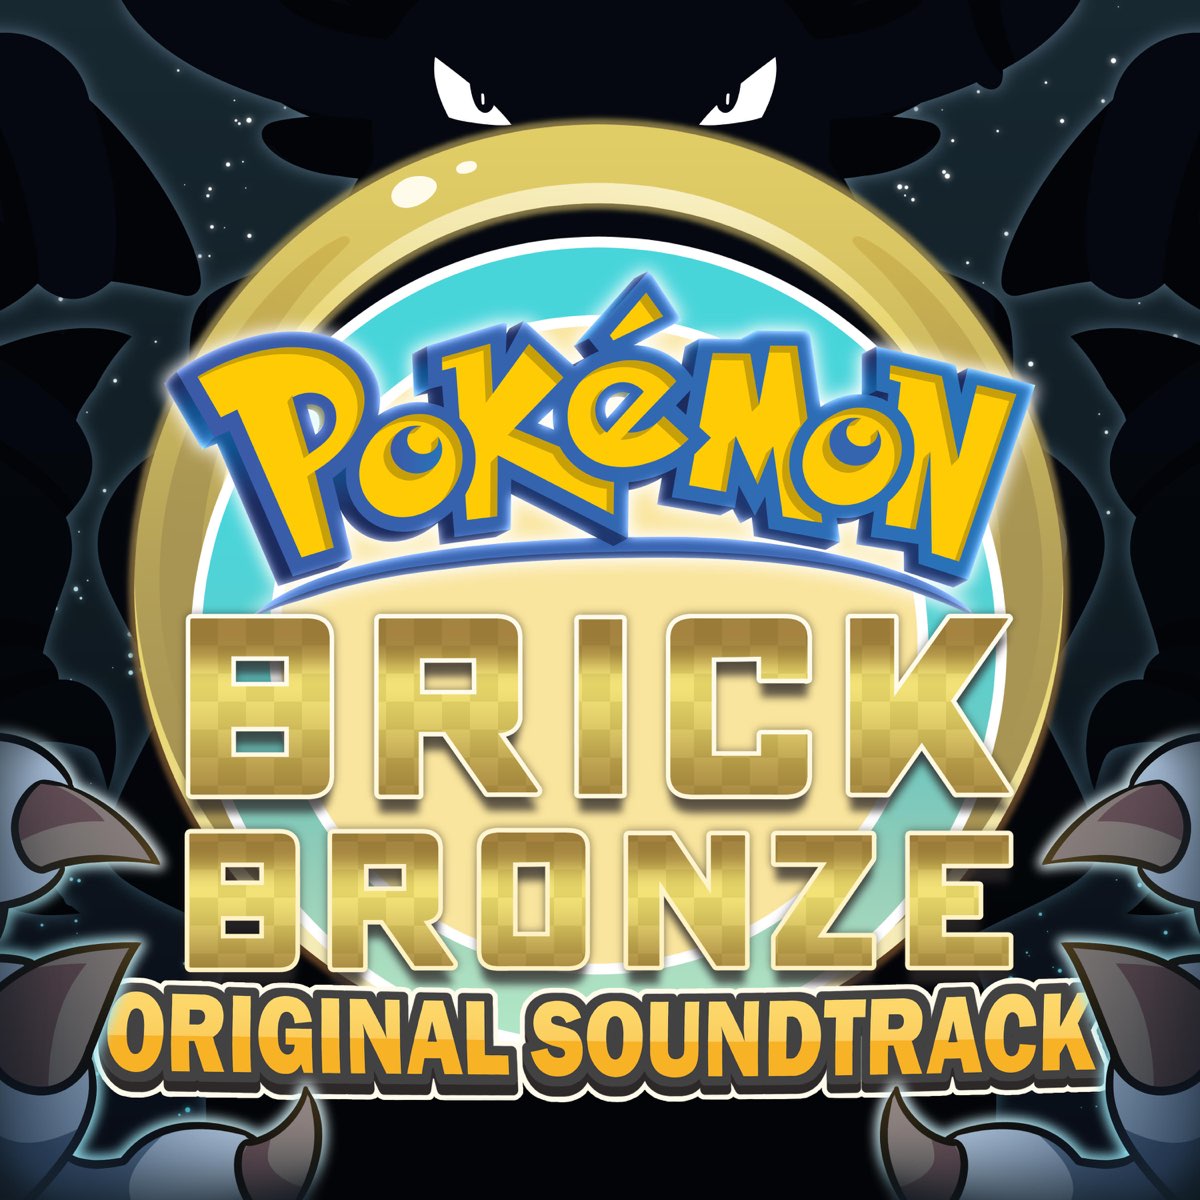 pokemon brick bronze all over again. : r/Pikmin